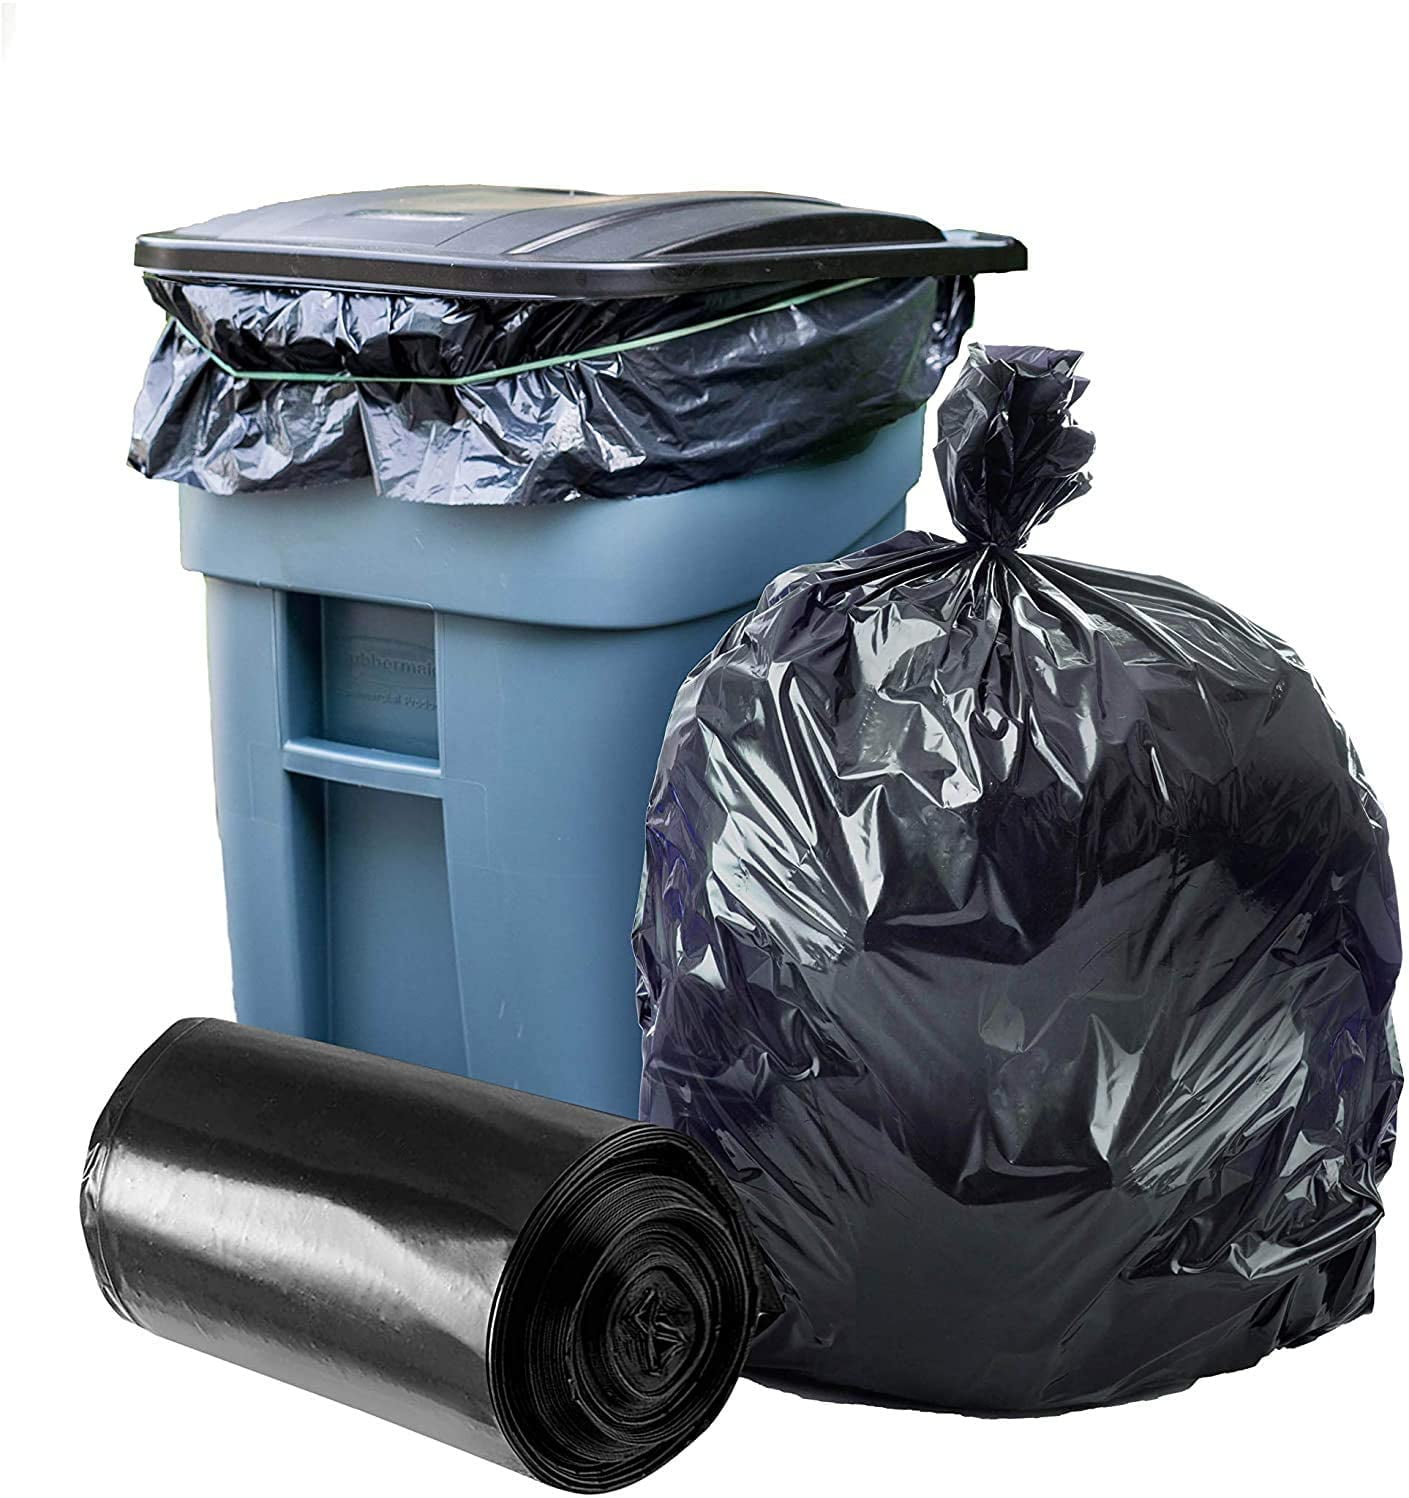 25 Count Details about   Plasticplace 95-96 Gallon Black Trash Bags 